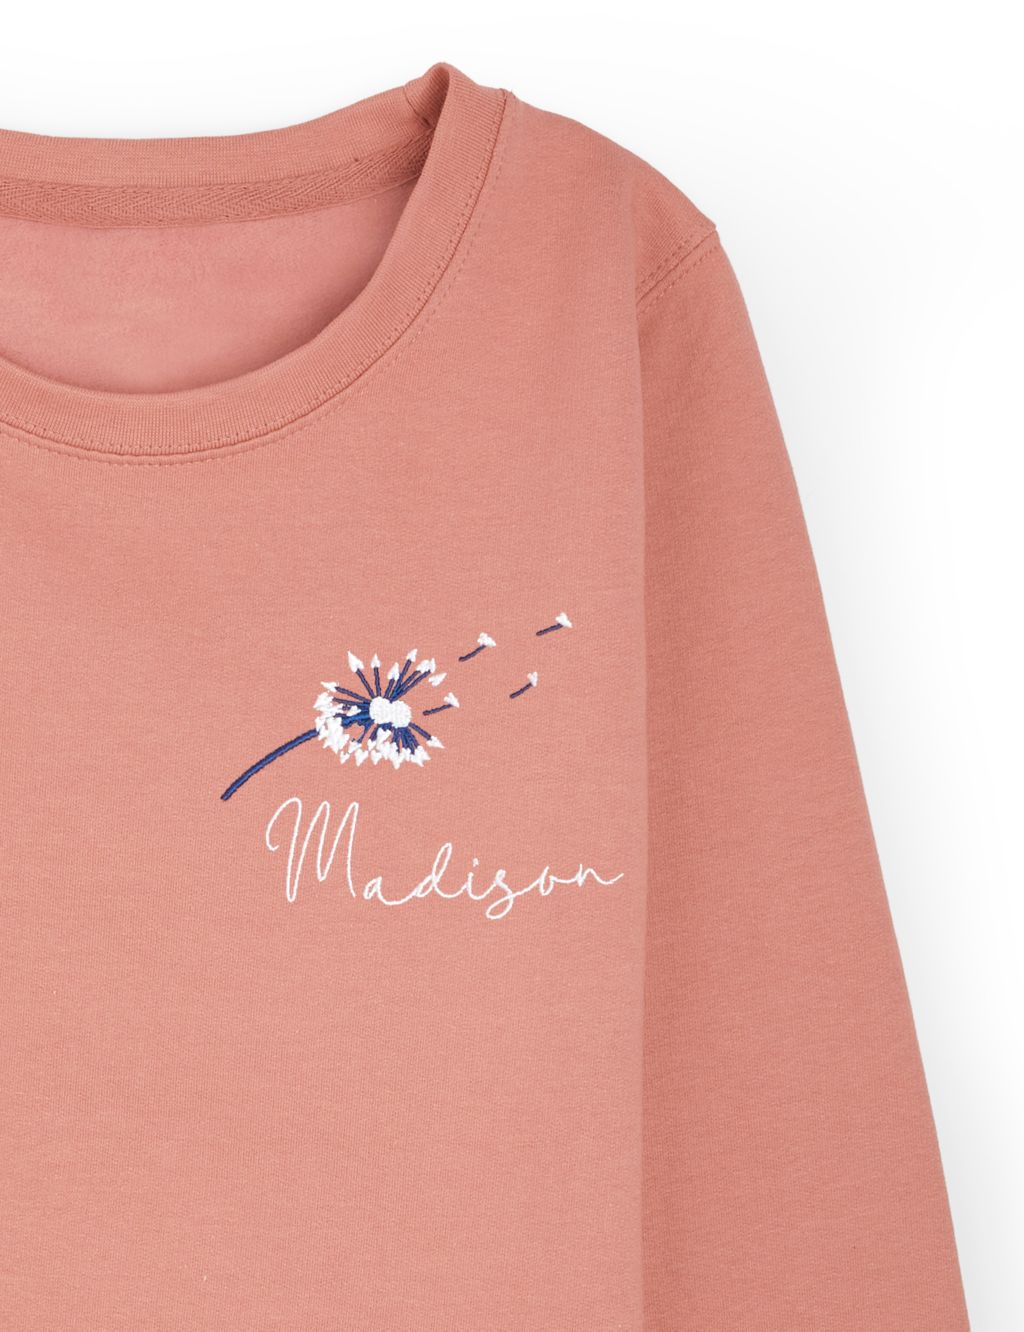 Personalised Ladies Dandelion Sweatshirt image 3